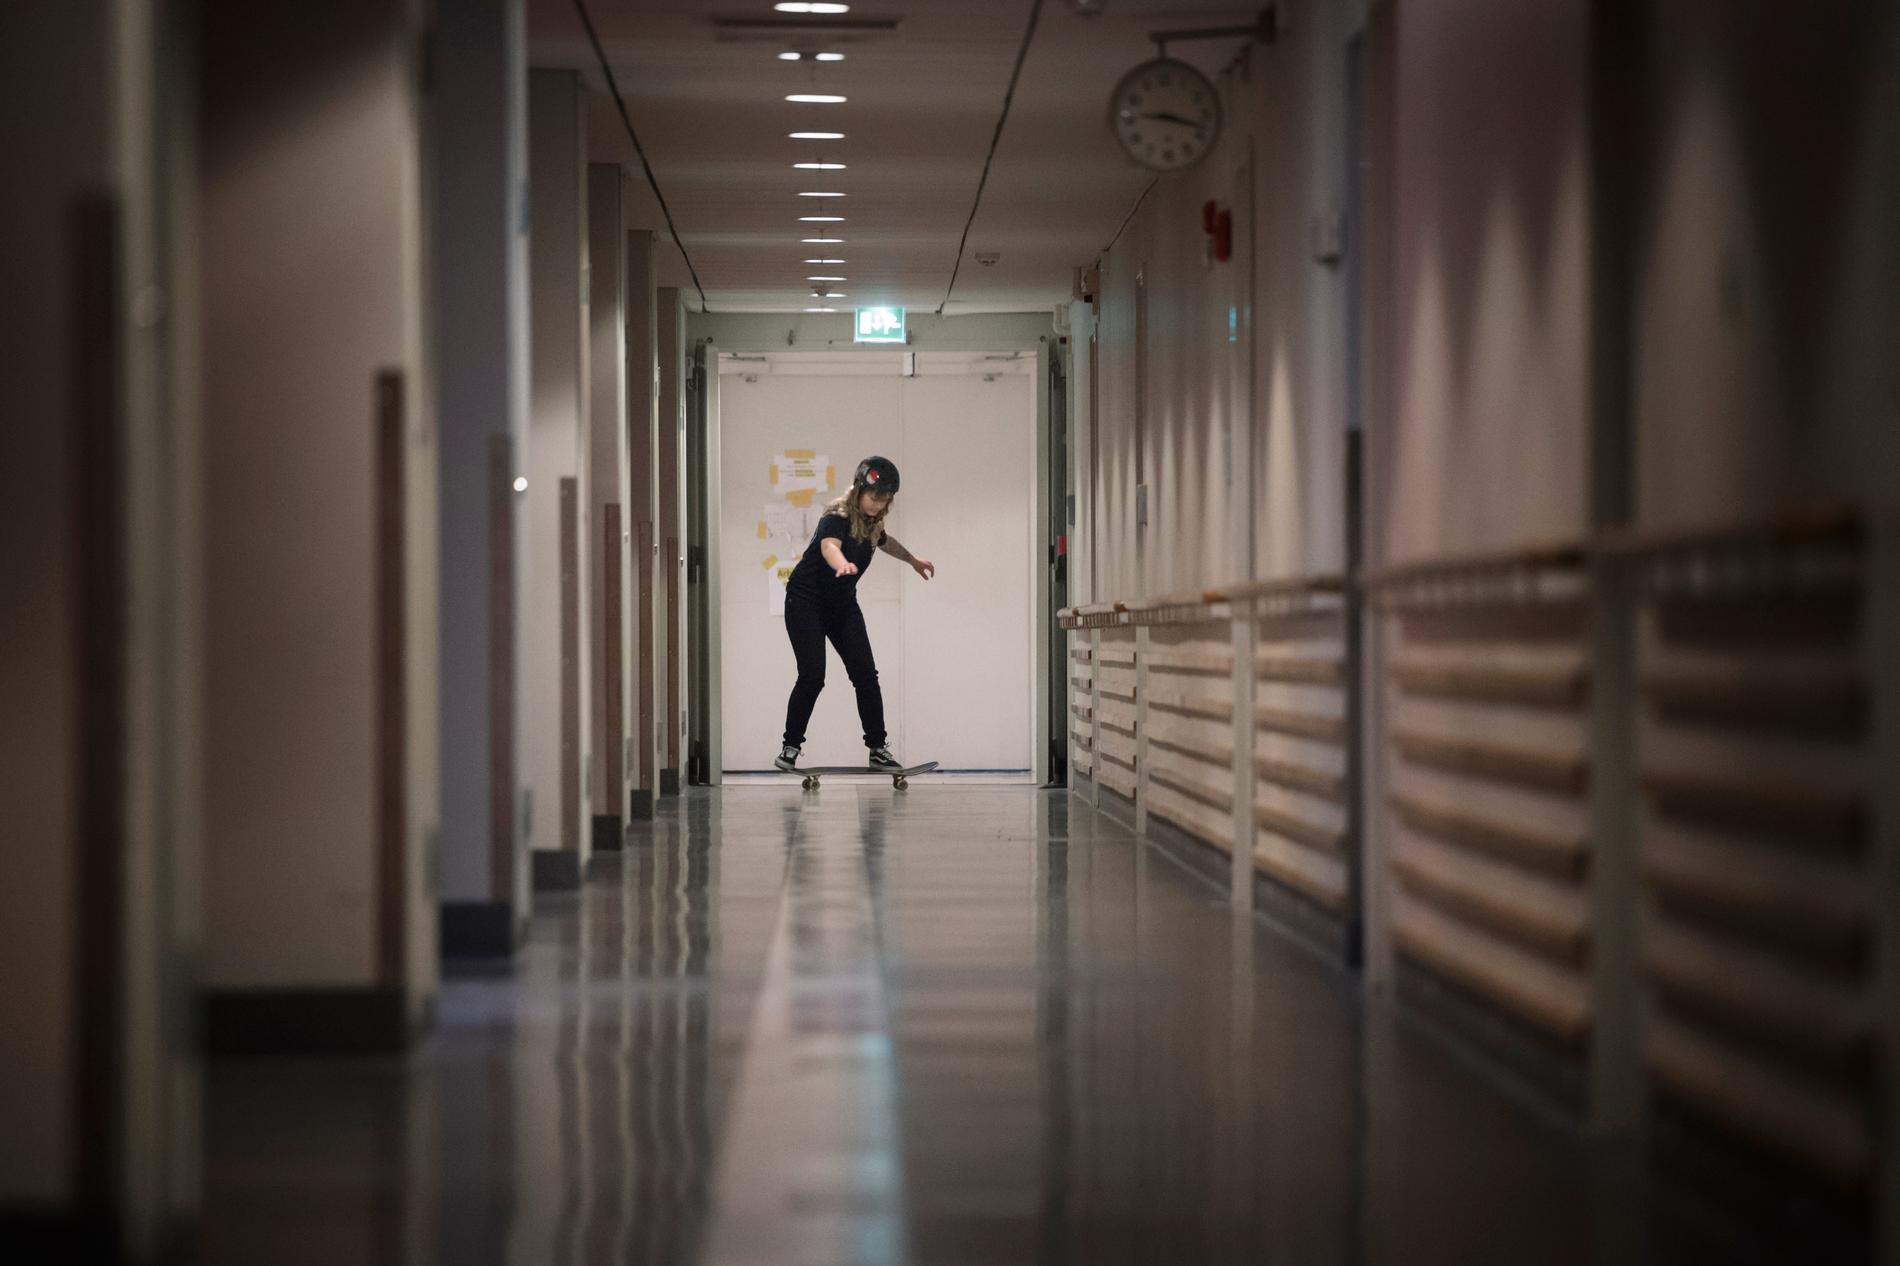 Malin åker skateboard i sjukhuset korridorer, på ordination av sjukgymnasterna.